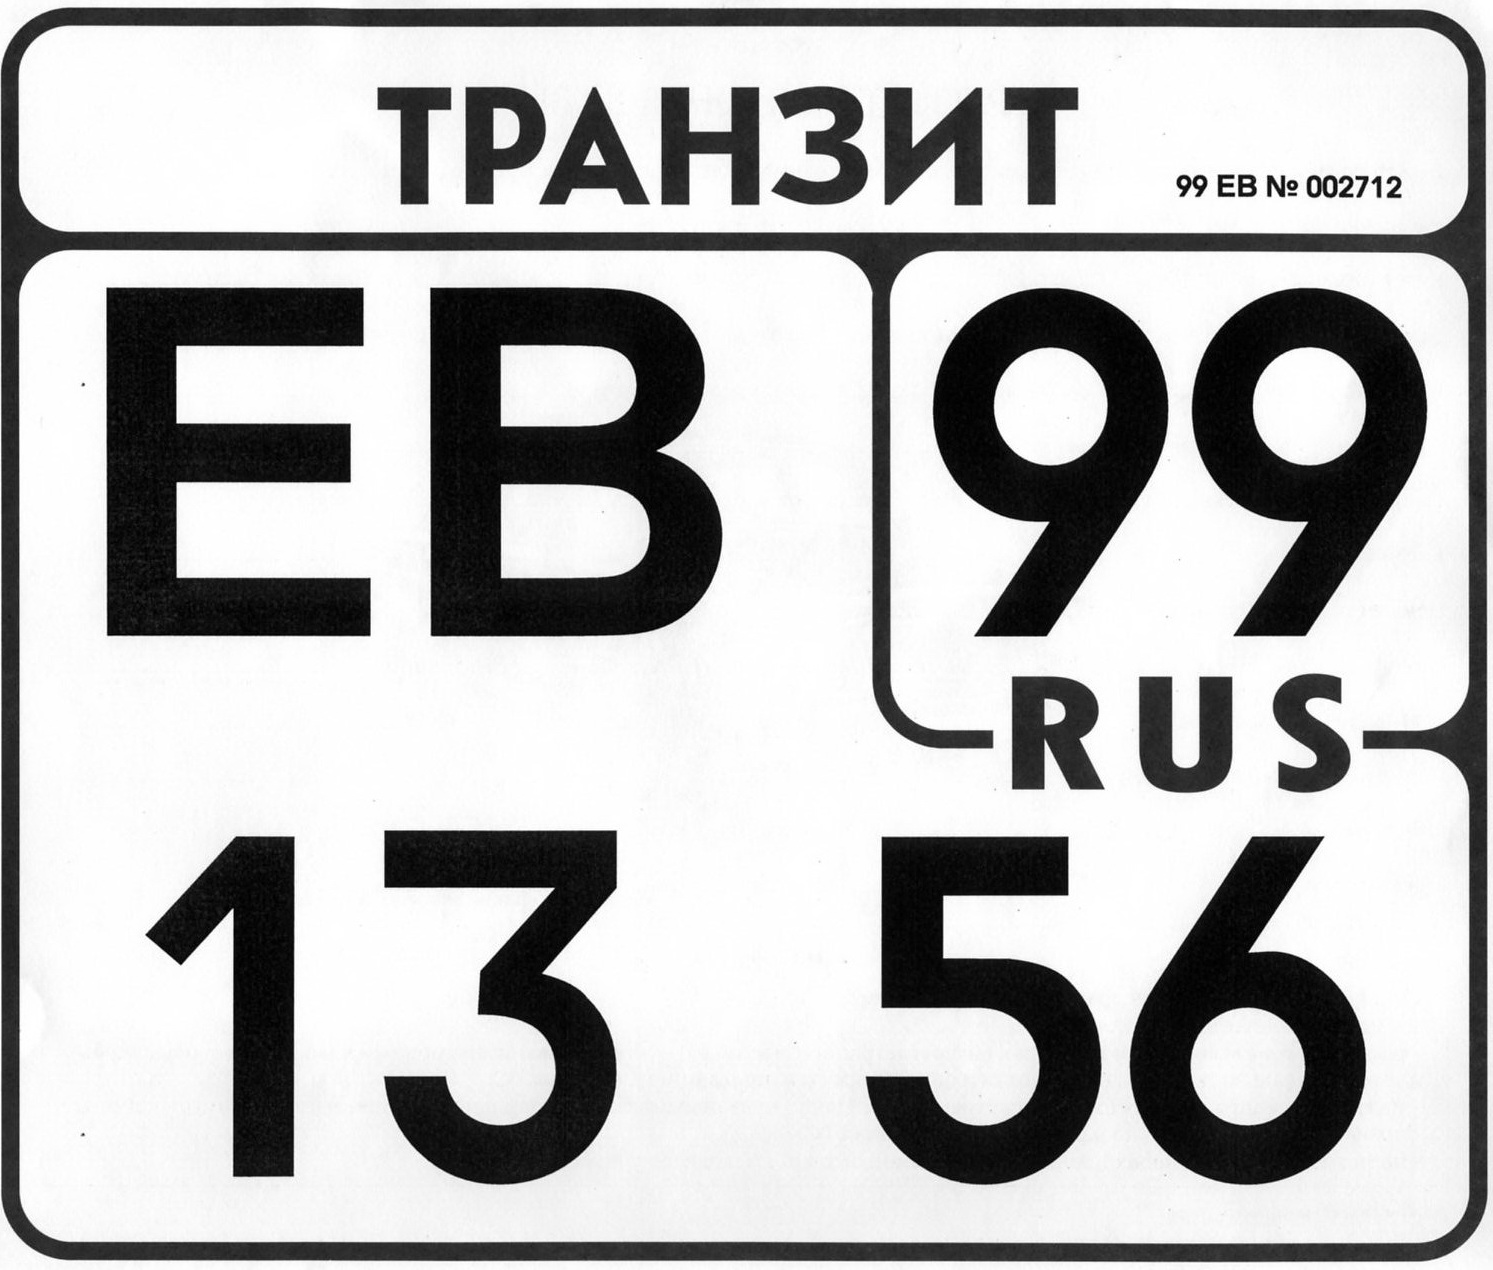 Номера теток. Транзитные номера. Бумажные транзитные номера. Транзитный номер на автомобиль. Российские транзитные номера.